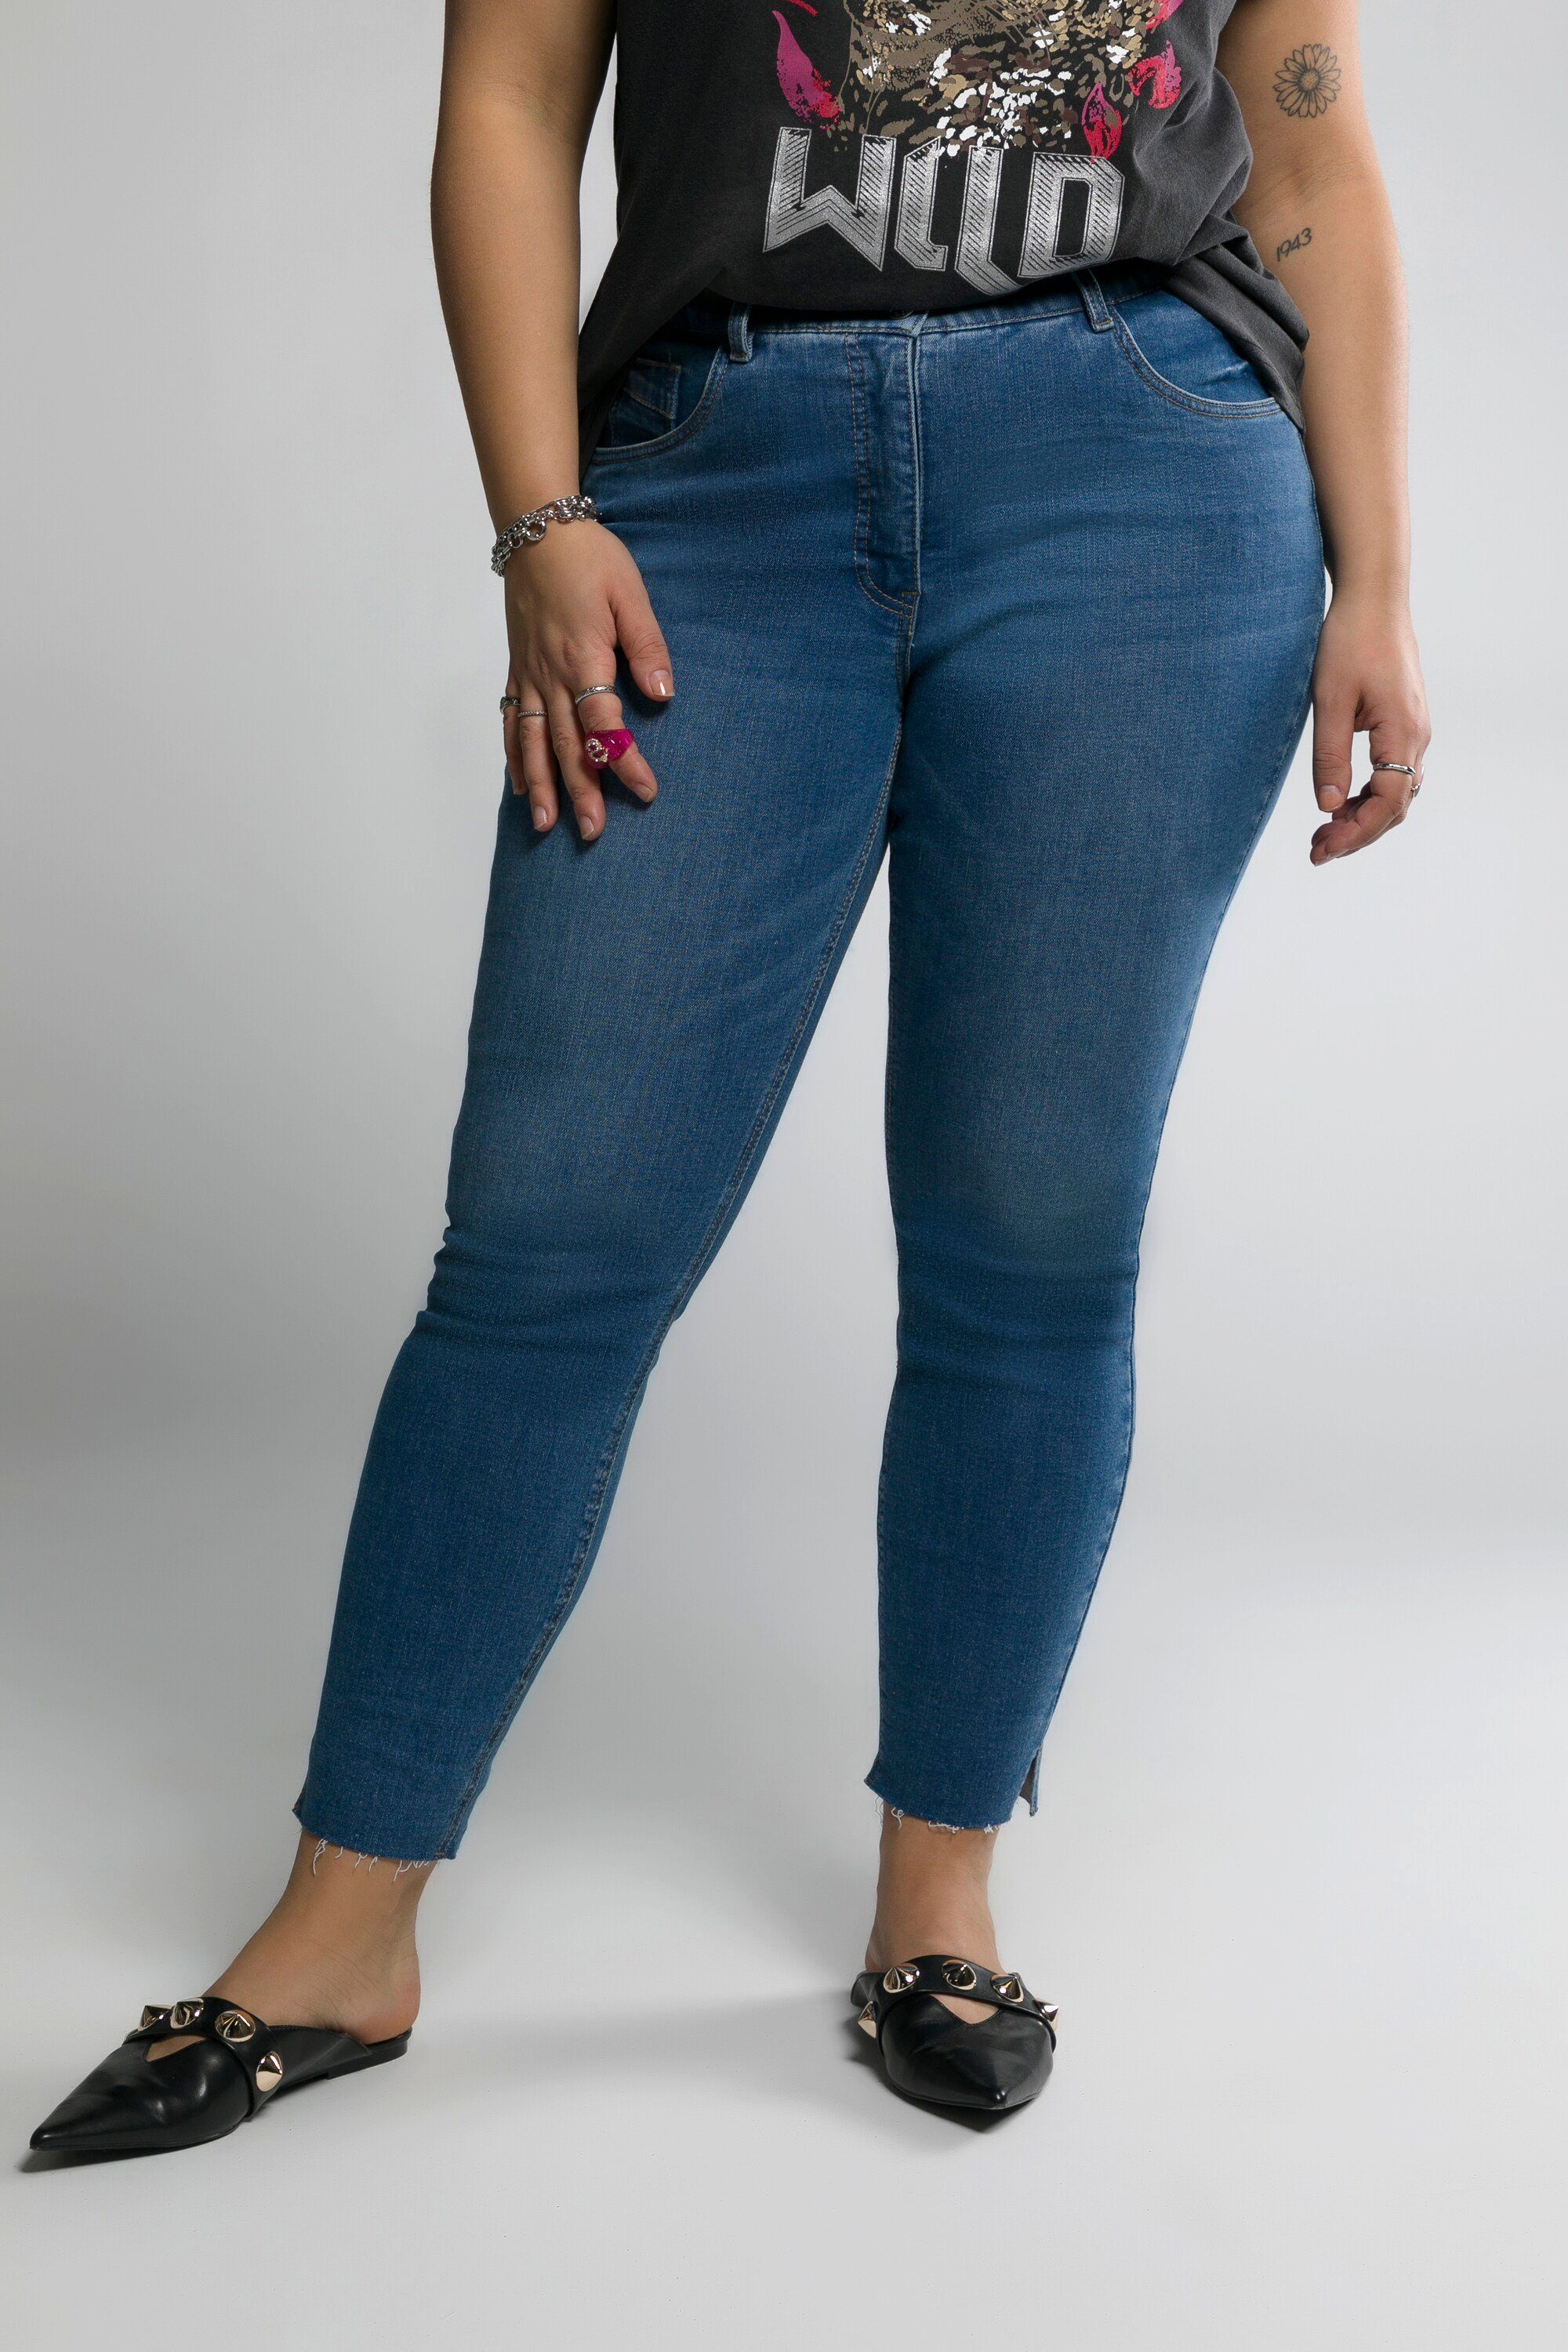 Studio Untold Schlupfhose 5-Pocket Schlitz blue Jeans schmal Fransensaum Skinny denim